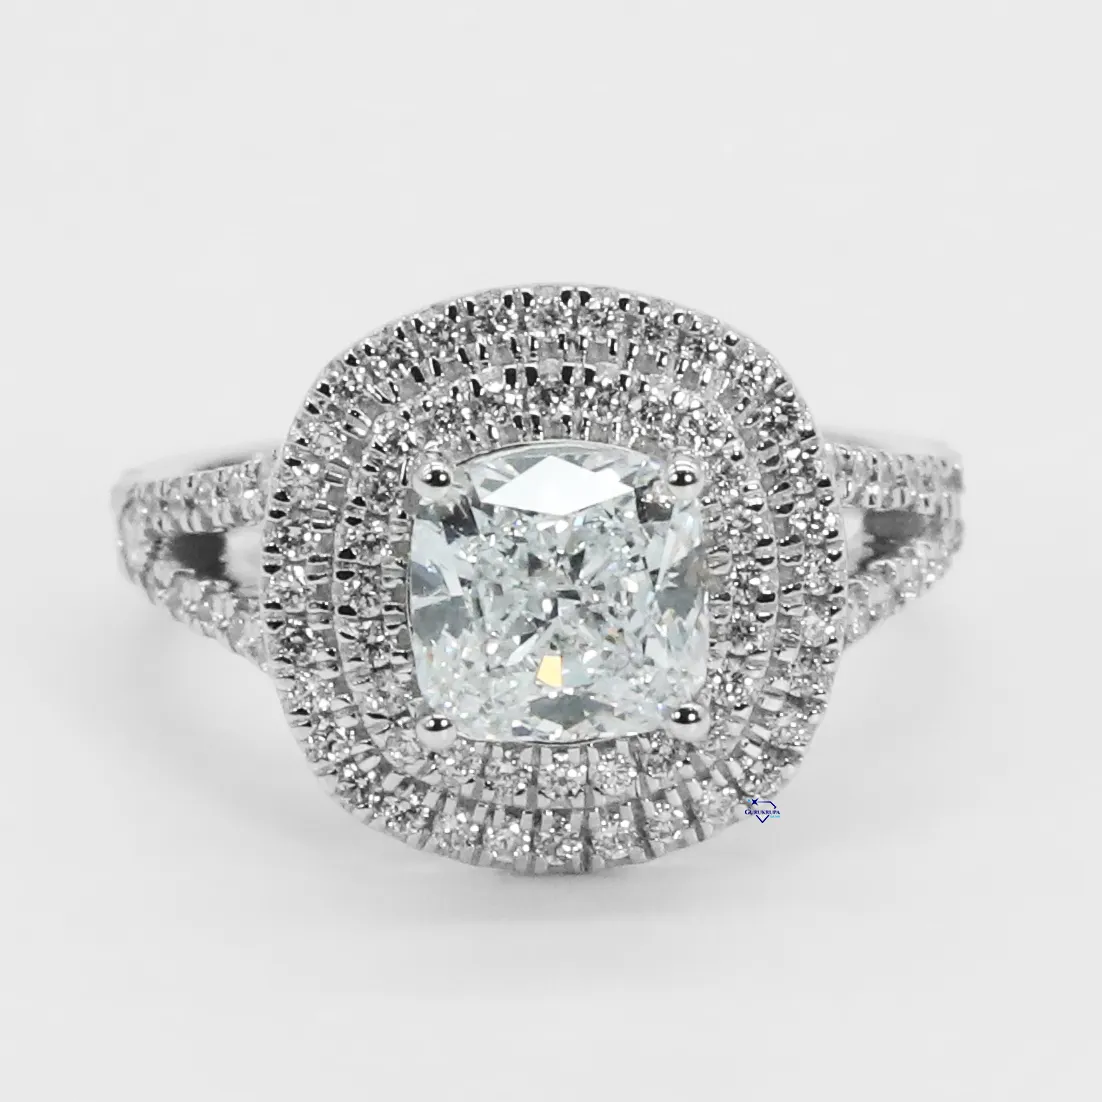 Gra Gecertificeerde 14kt Witgouden Solitaire Ring Ontworpen Voor Speciale Gelegenheden Met Prachtige Kussenvormige Vvvs Moissanite Diamanten